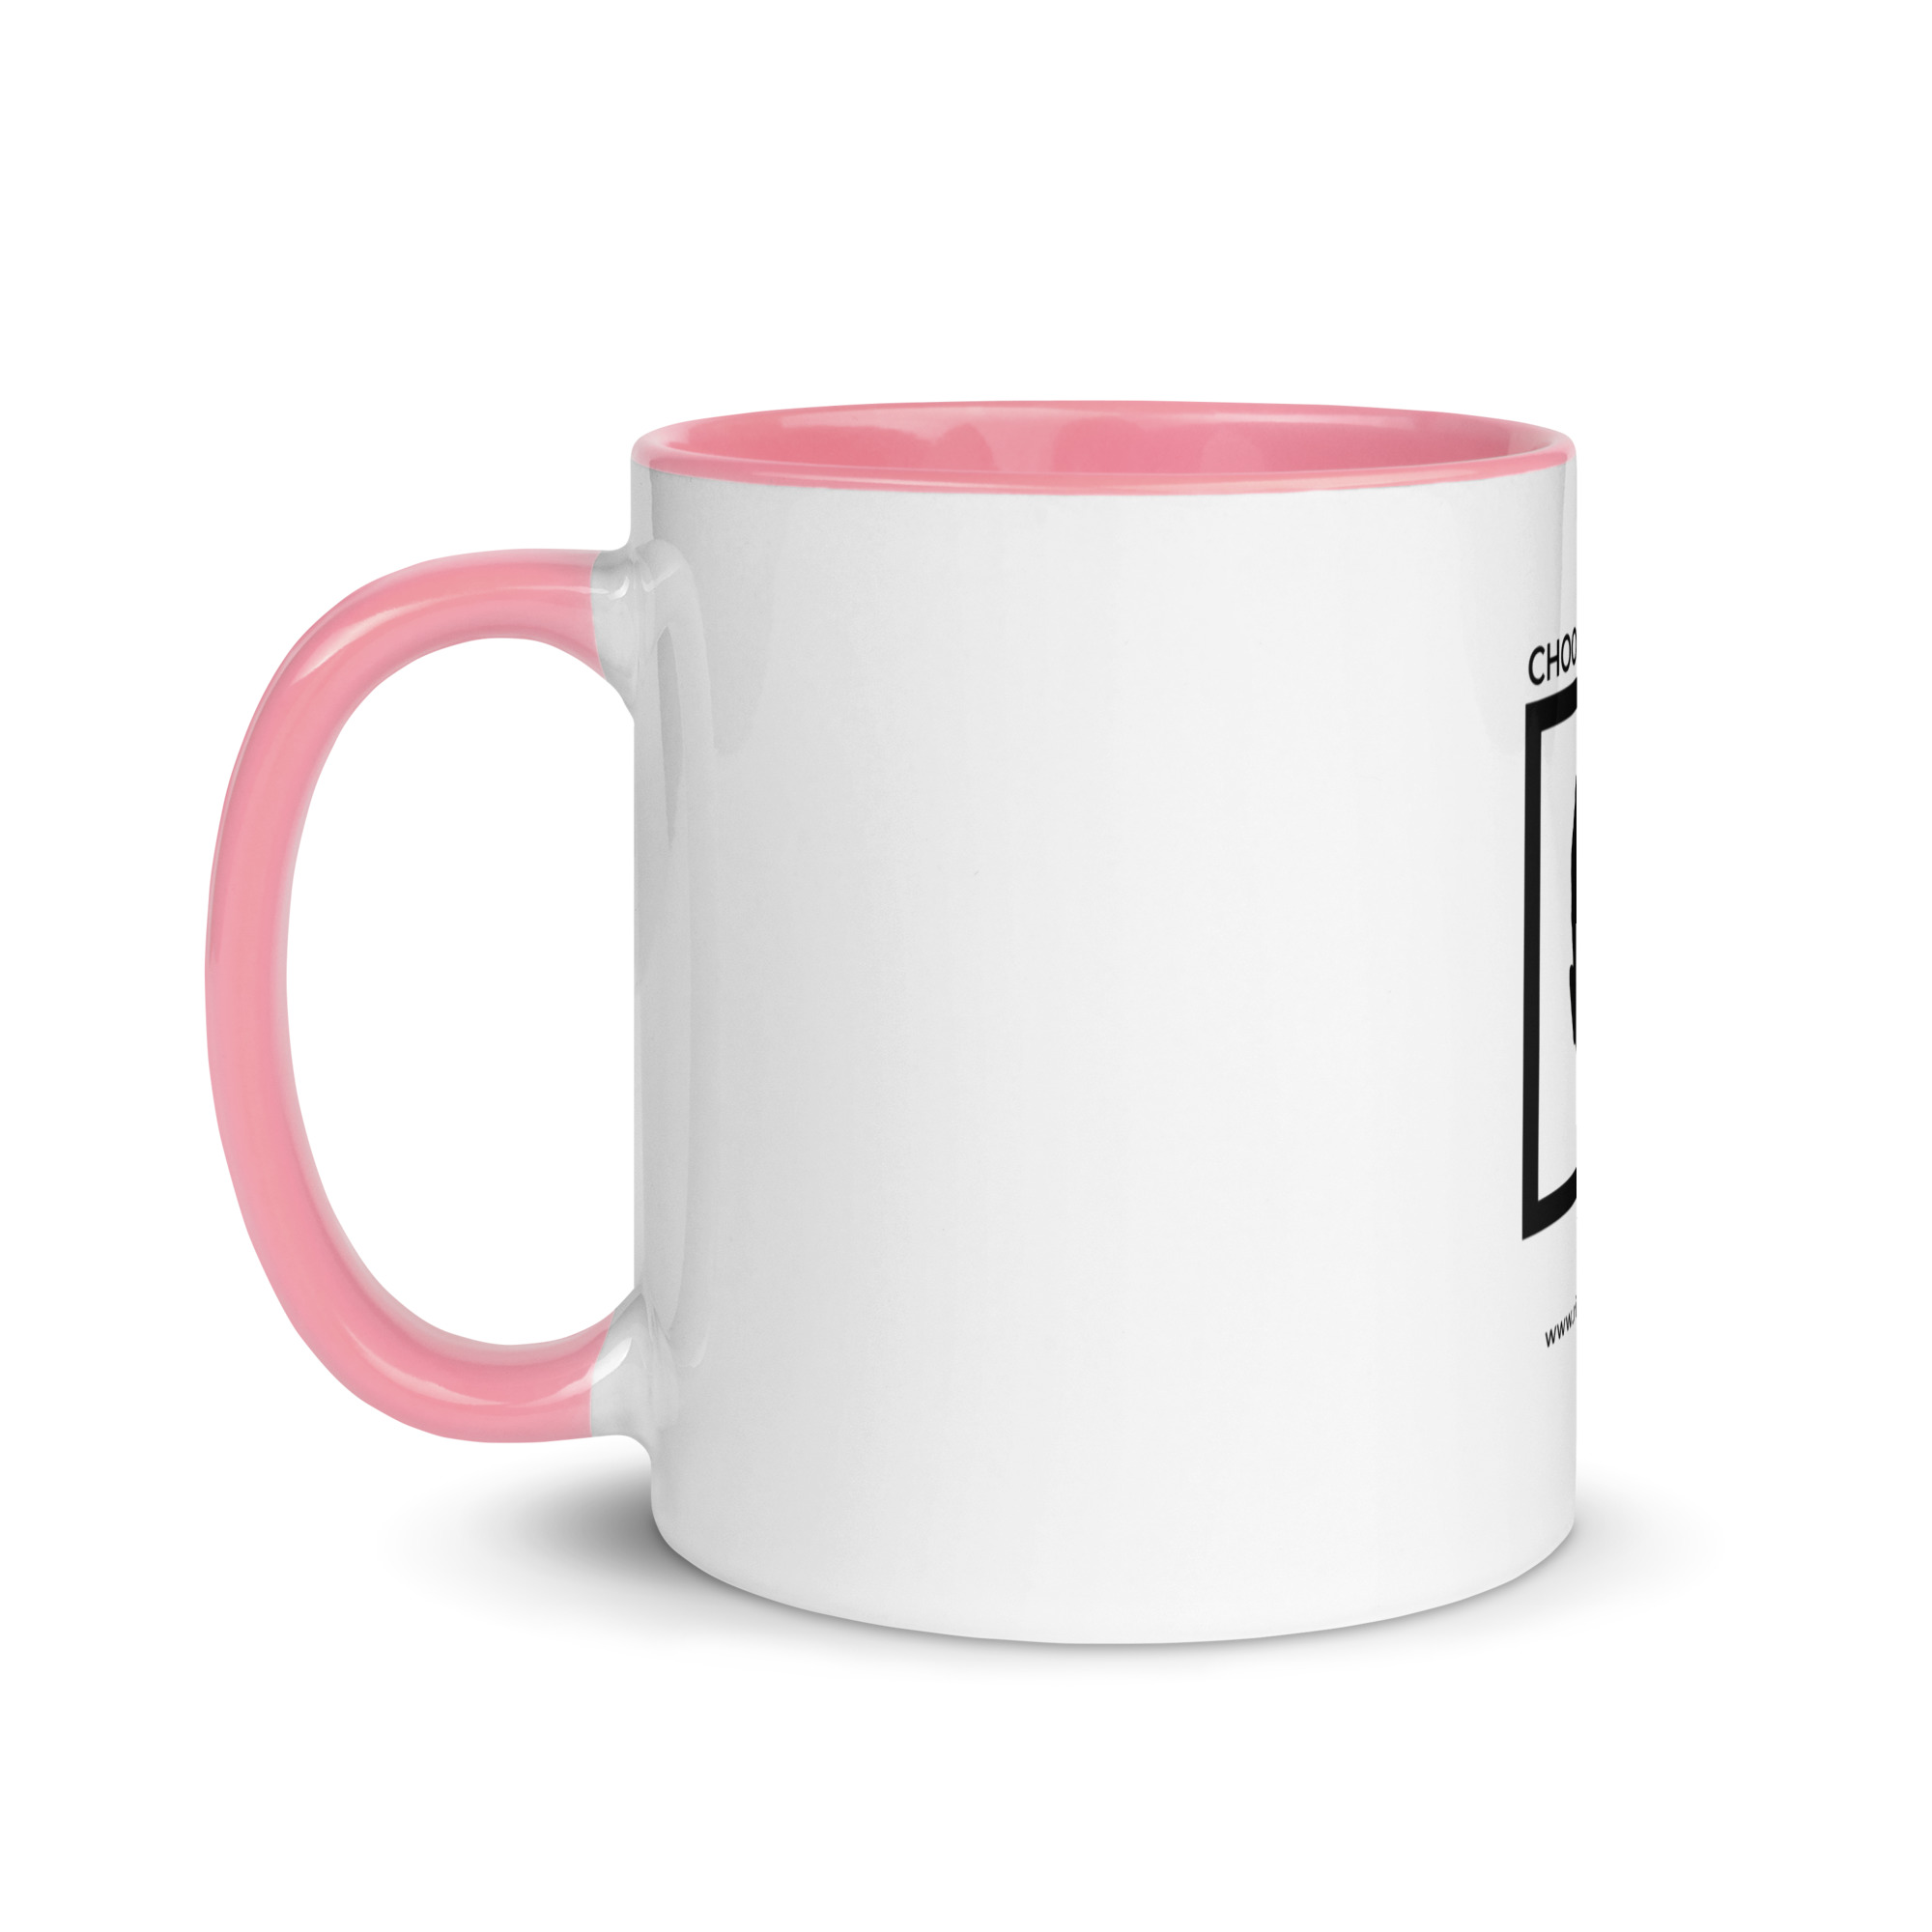 white-ceramic-mug-with-color-inside-pink-11-oz-left-6522a1a4042c3.jpg